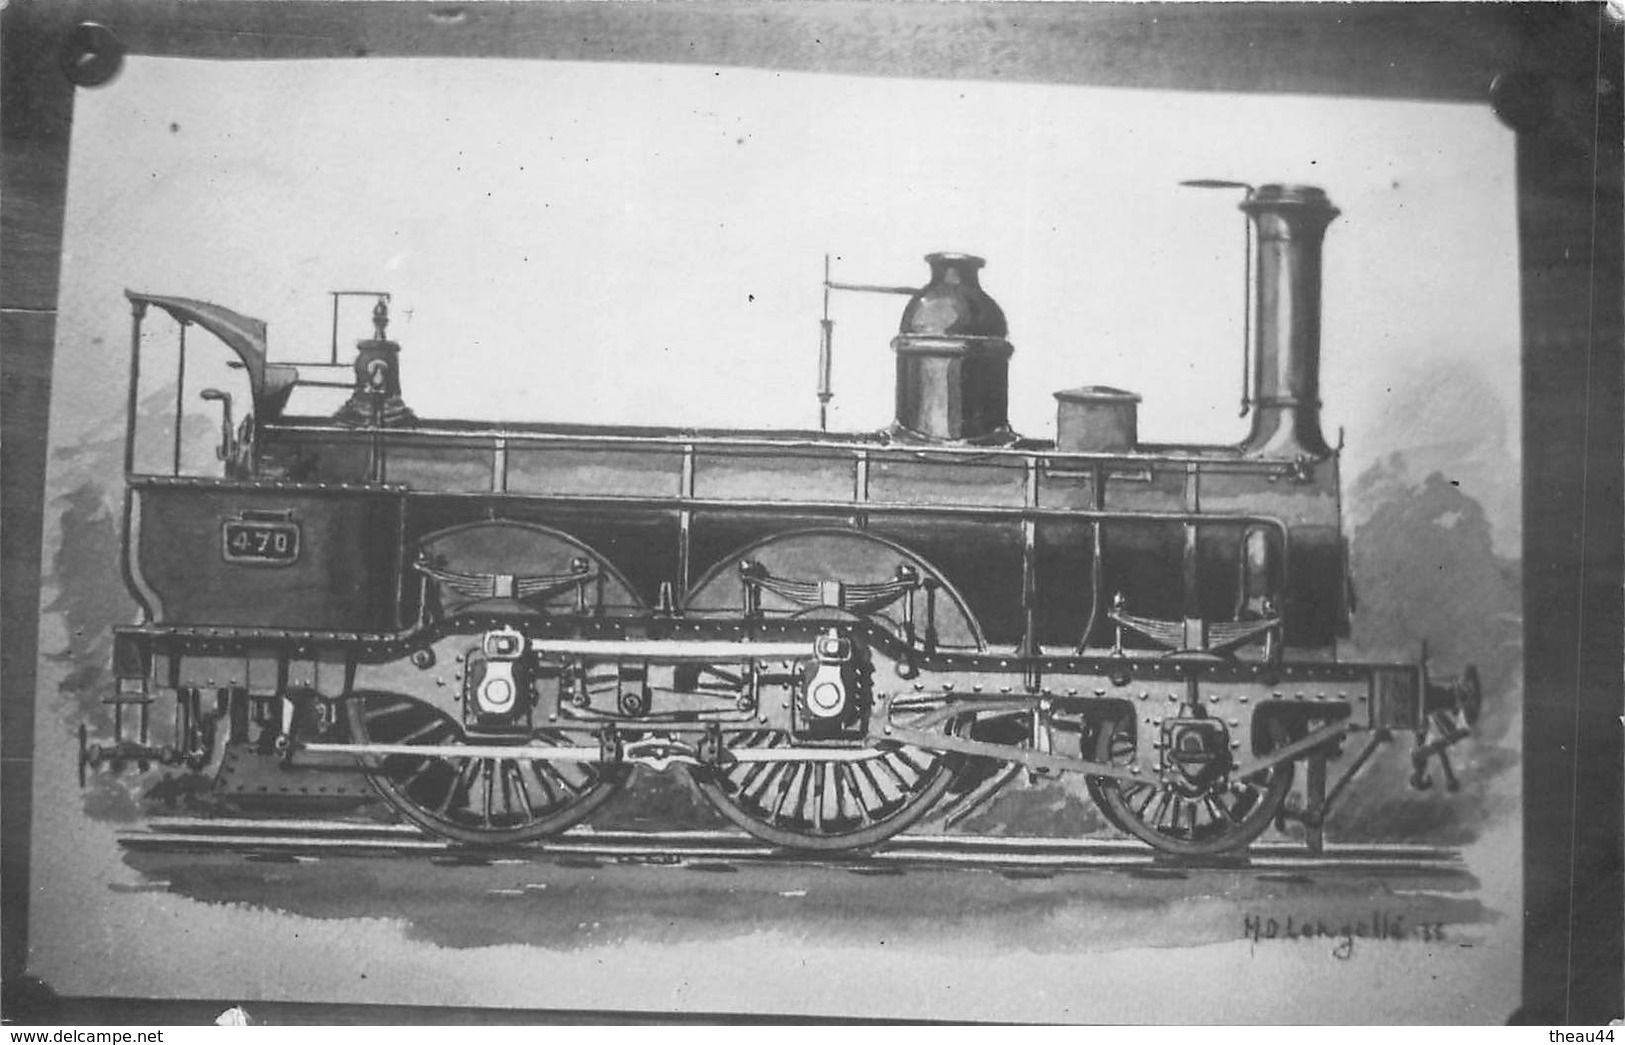 ¤¤  -  Cliché D'une Locomotive  -  Illustrateur " M.D. Lanzellé " En 1936   -  Voir Description     -  ¤¤ - Equipment